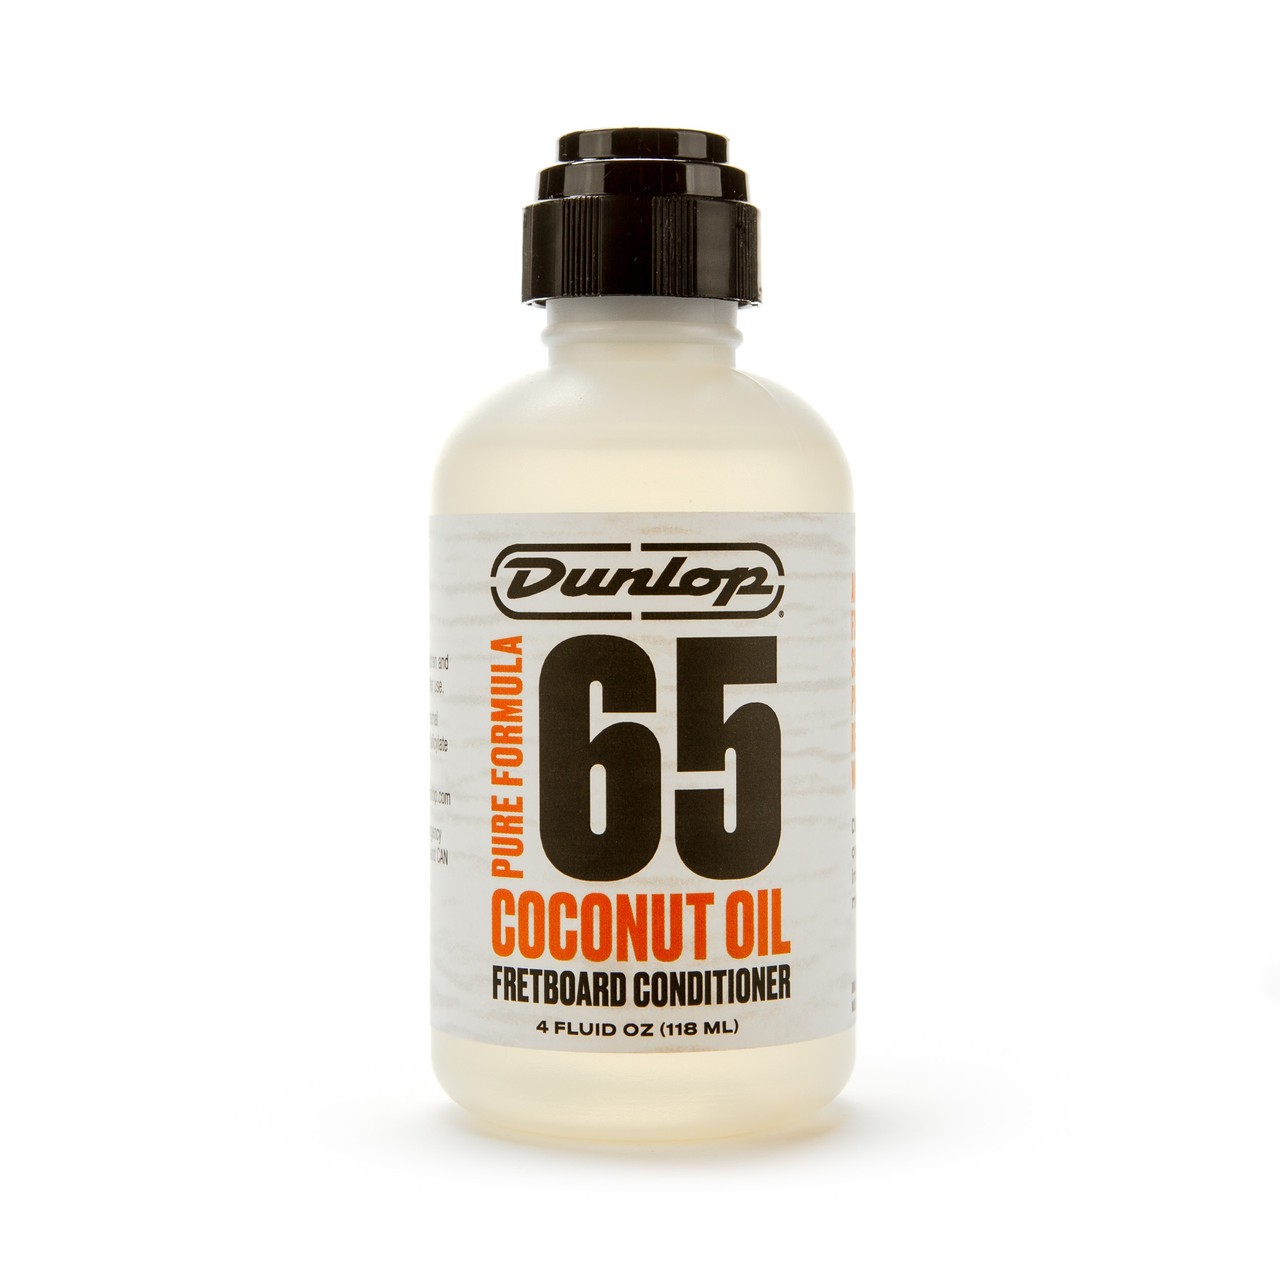 DUNLOP - 6634 Pure Formula 65 Coconut Oil Fretboard Conditioner